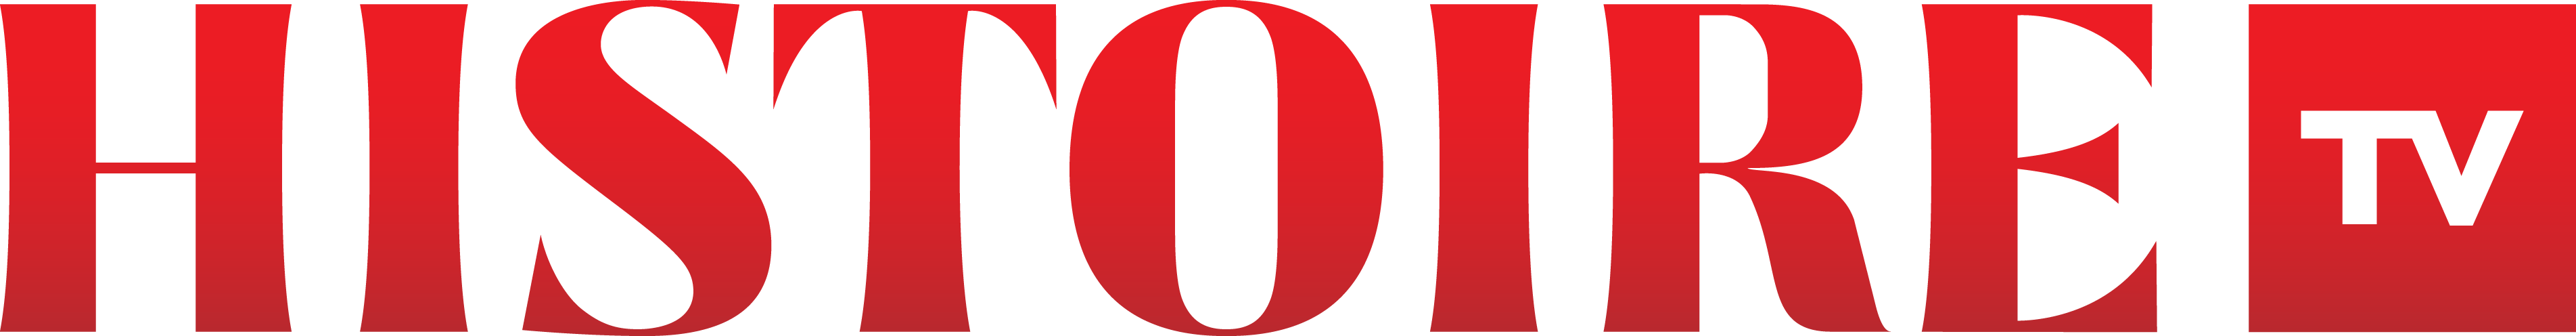 Histoire TV logo